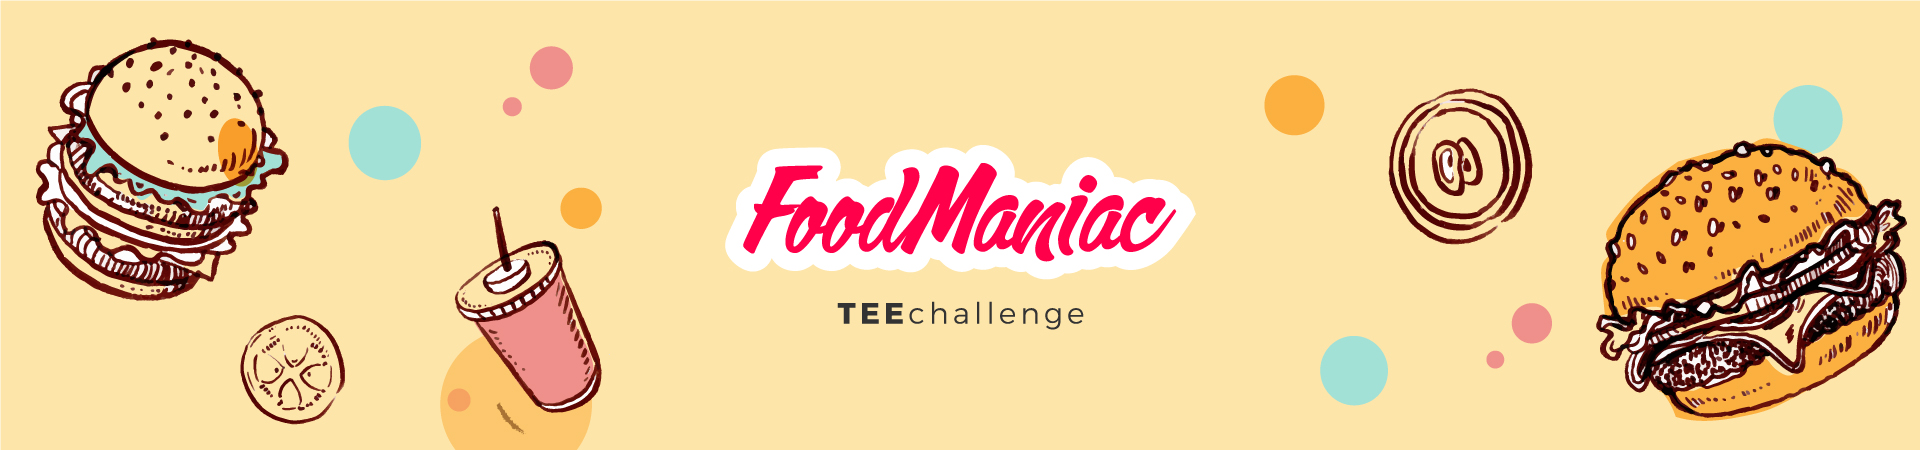 Teechallenge FOOD MANIAC Banner Desktop